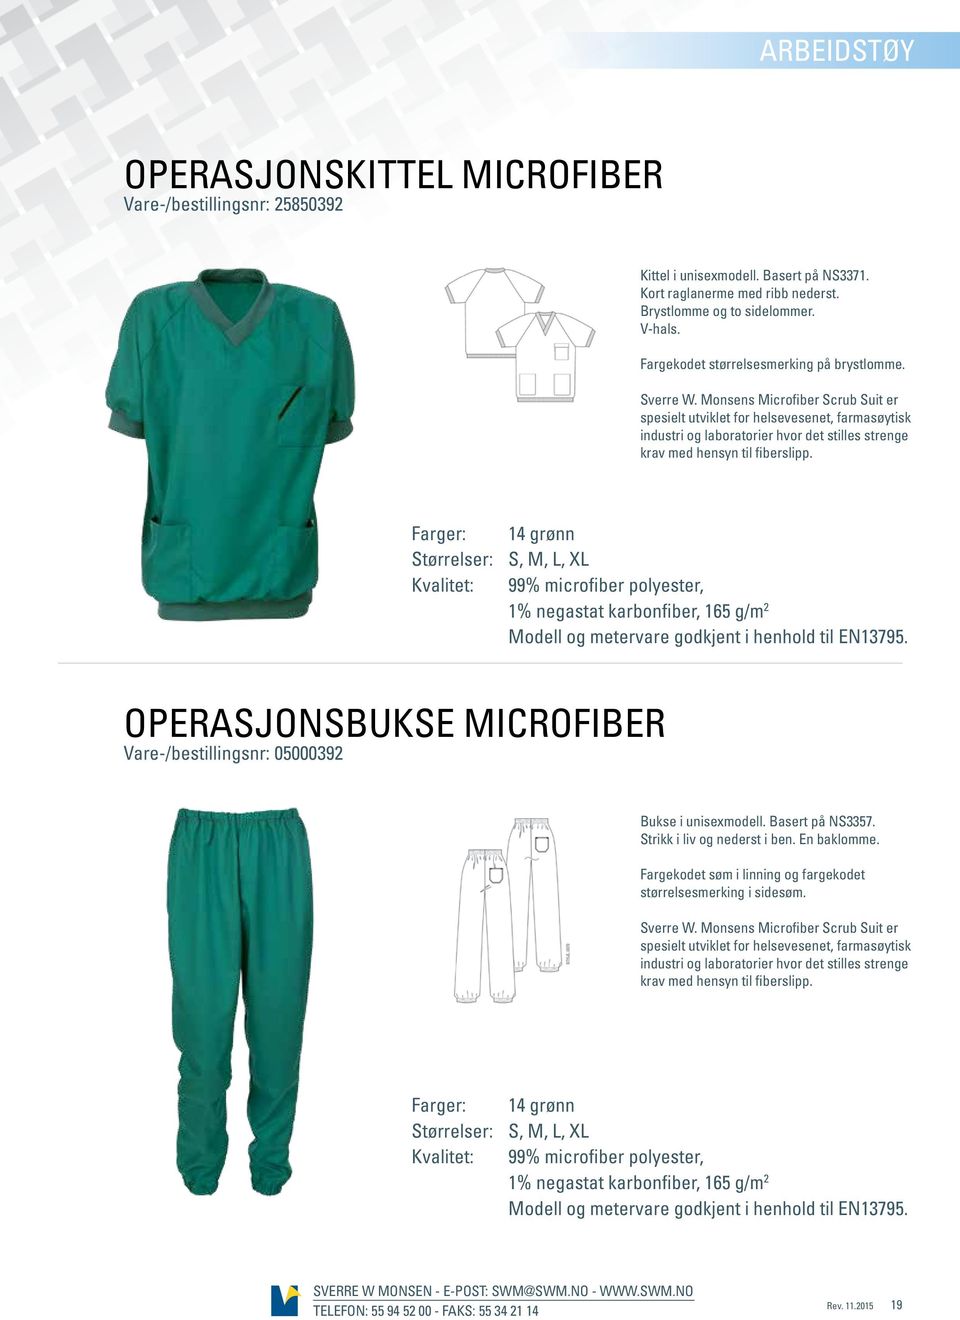 Monsens Microfiber Scrub Suit er spesielt utviklet for helsevesenet, farmasøytisk industri og laboratorier hvor det stilles strenge krav med hensyn til fiberslipp.